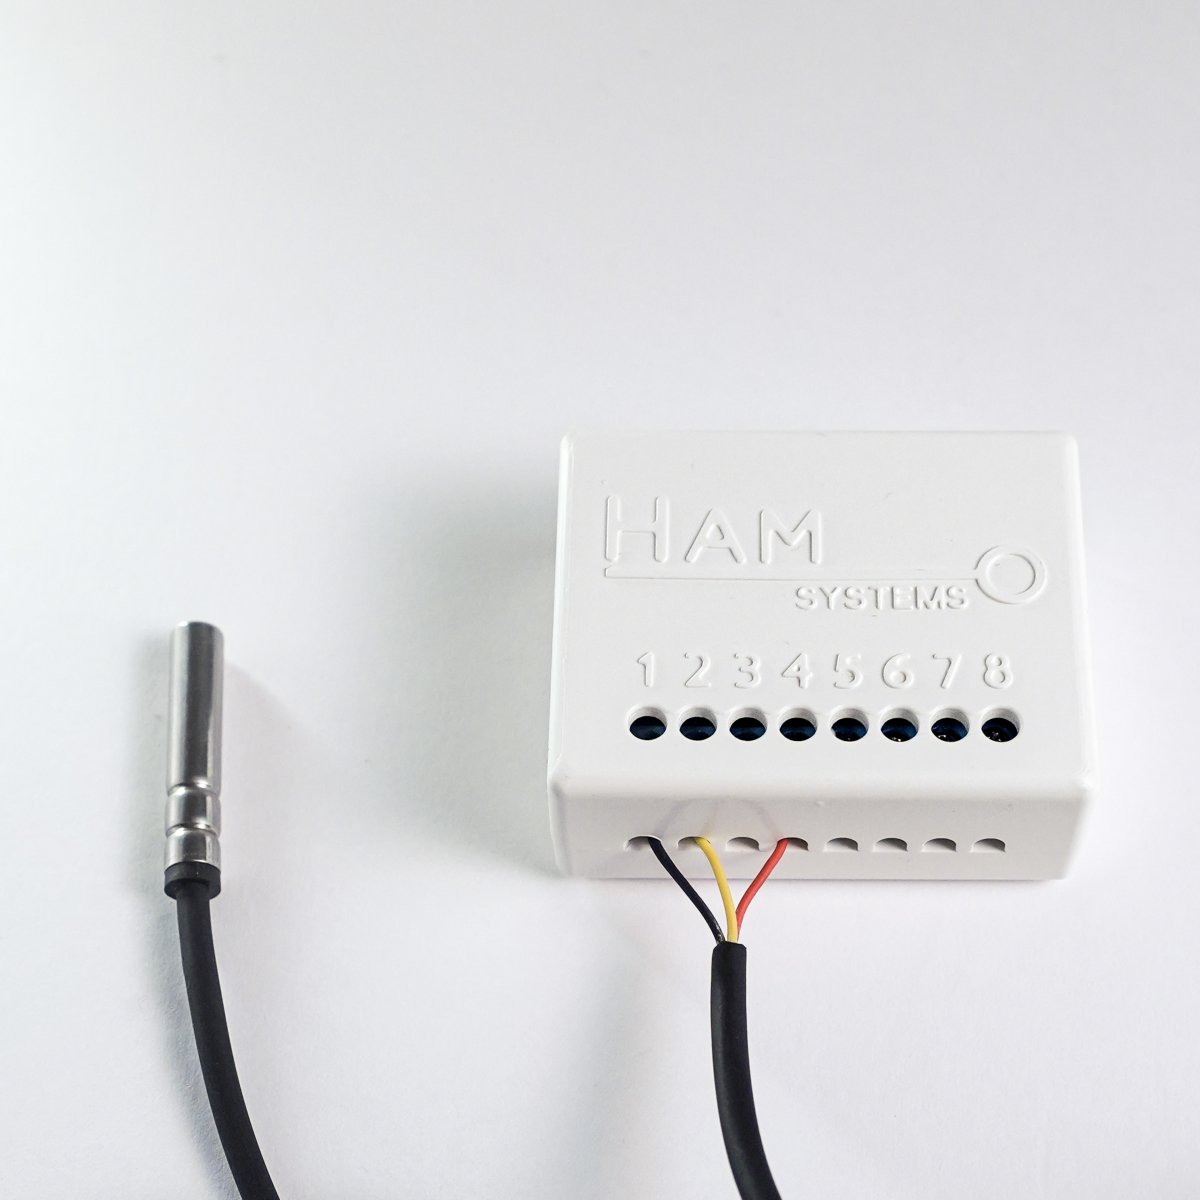 HAM ThermoSenseX1 - with temperature sensor